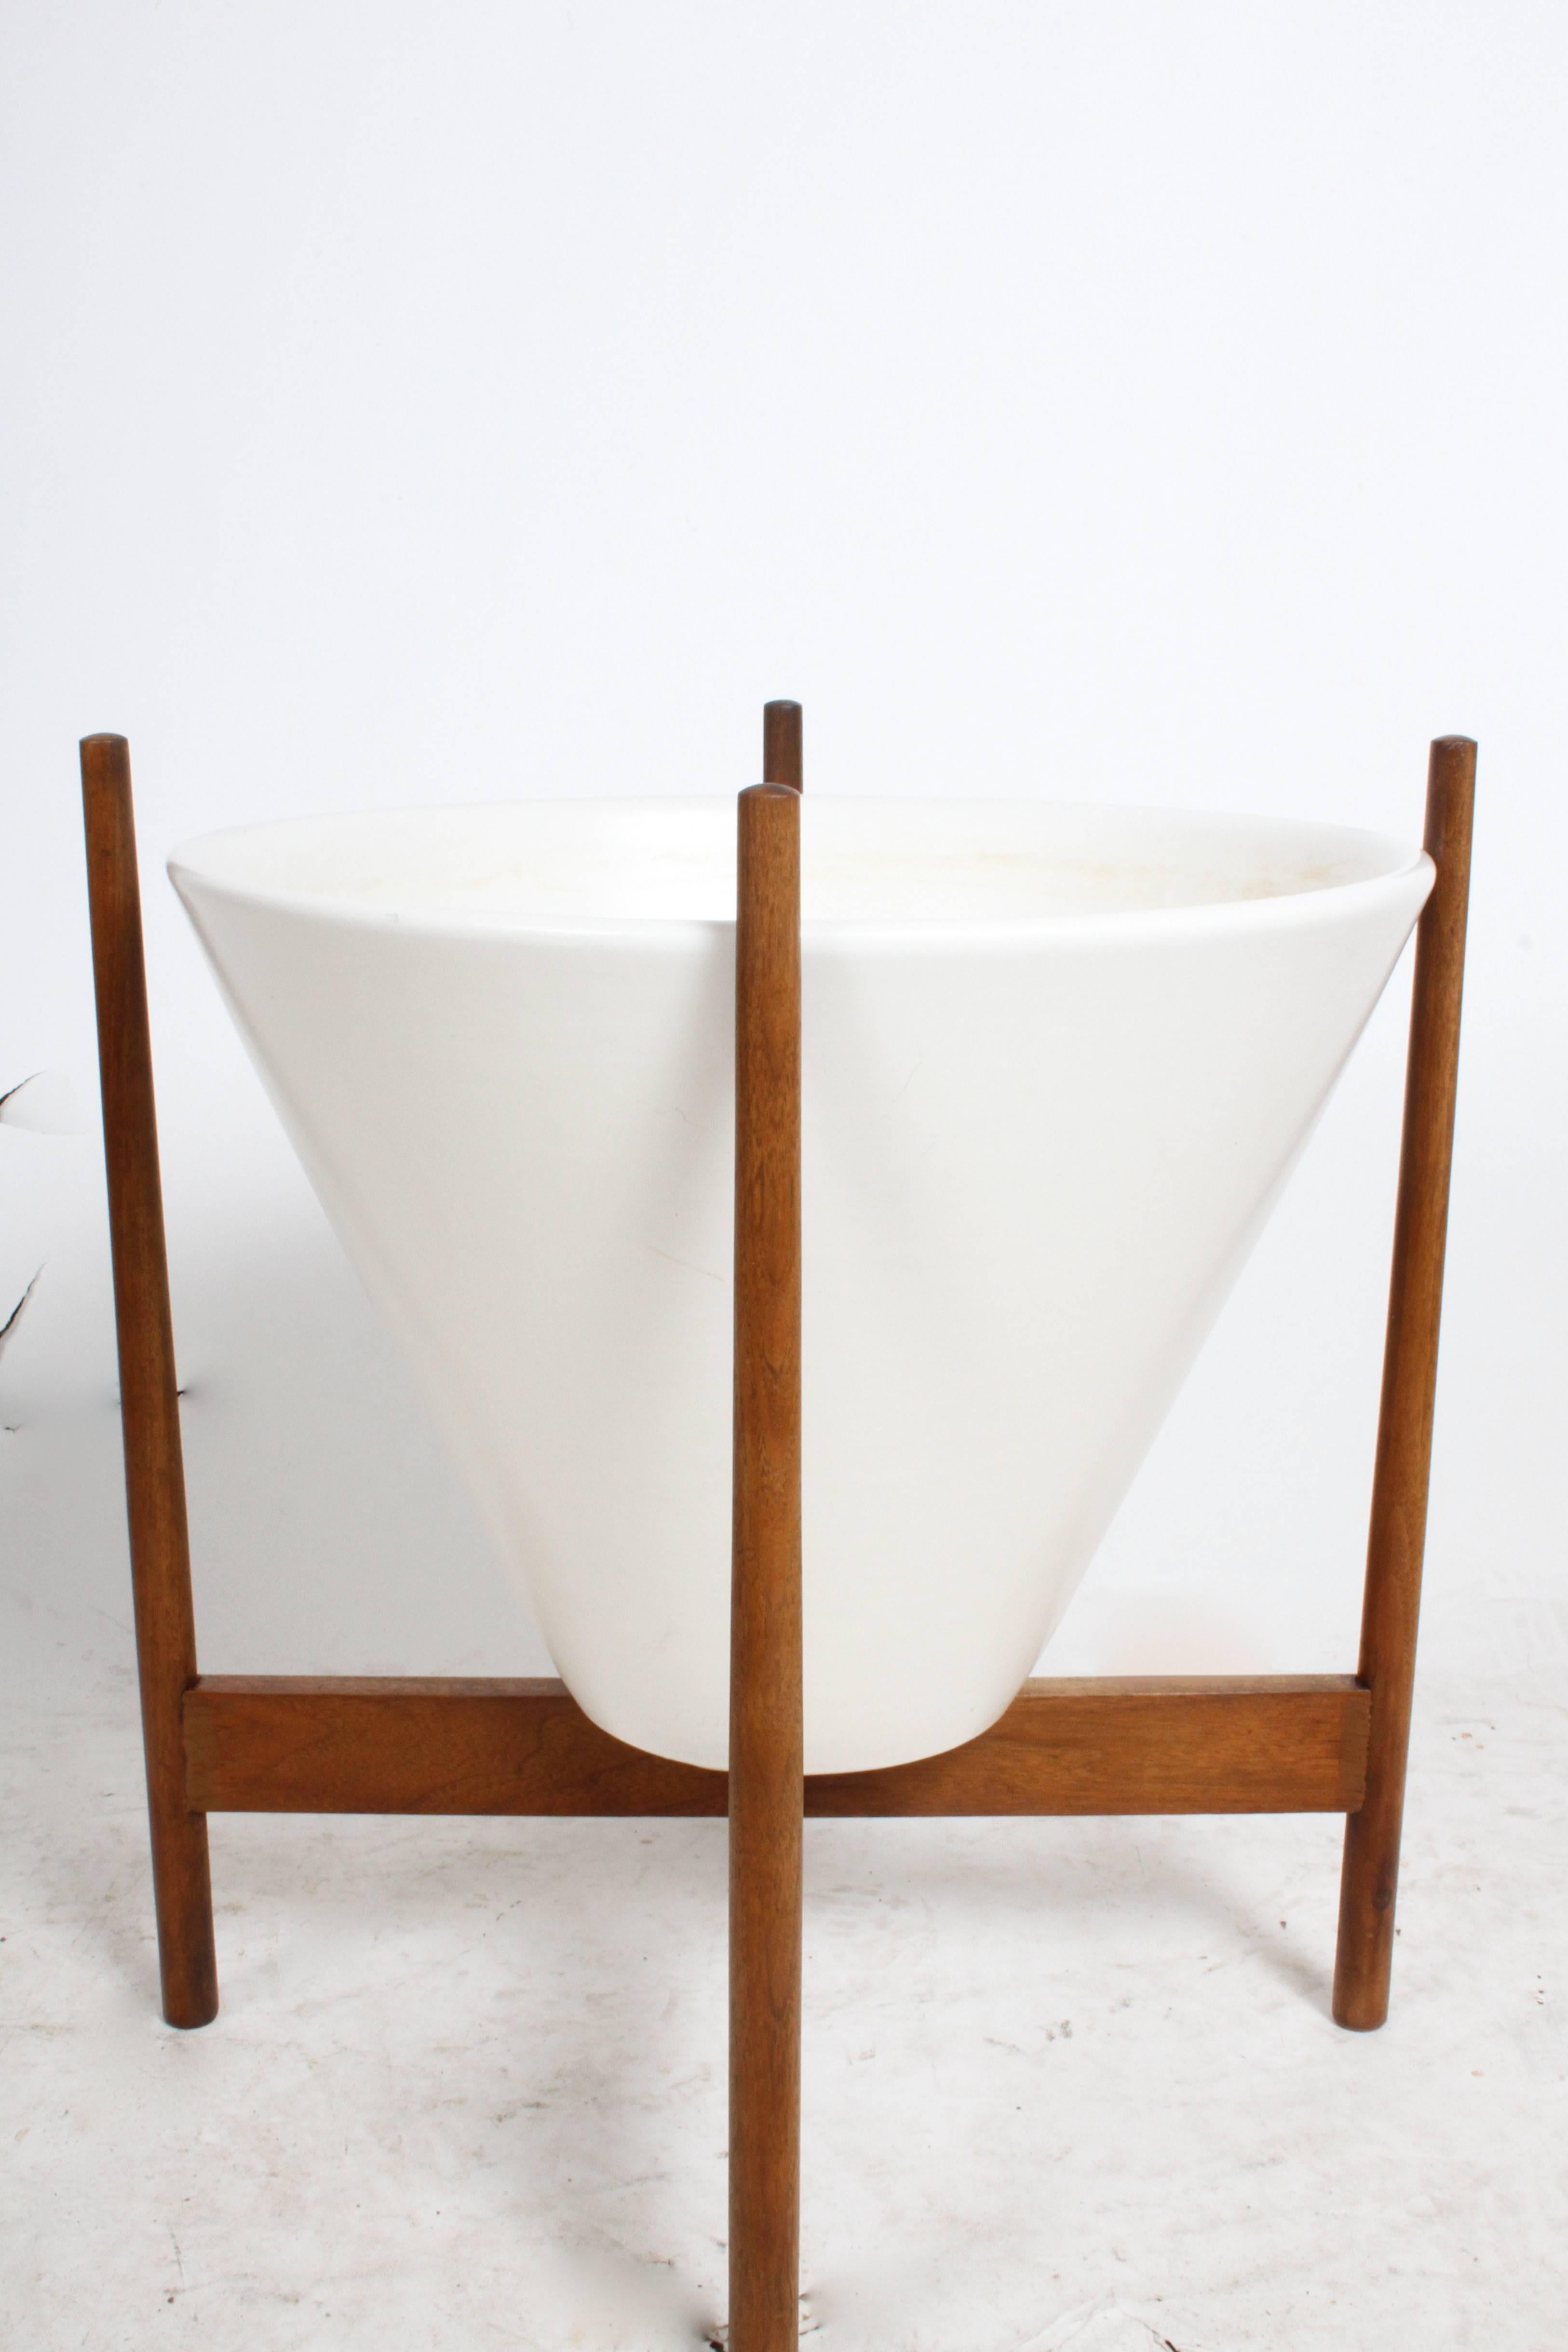 Lagardo Tackett Ceramic Planter Model S-04 for Architectural Pottery circa 1960s 1